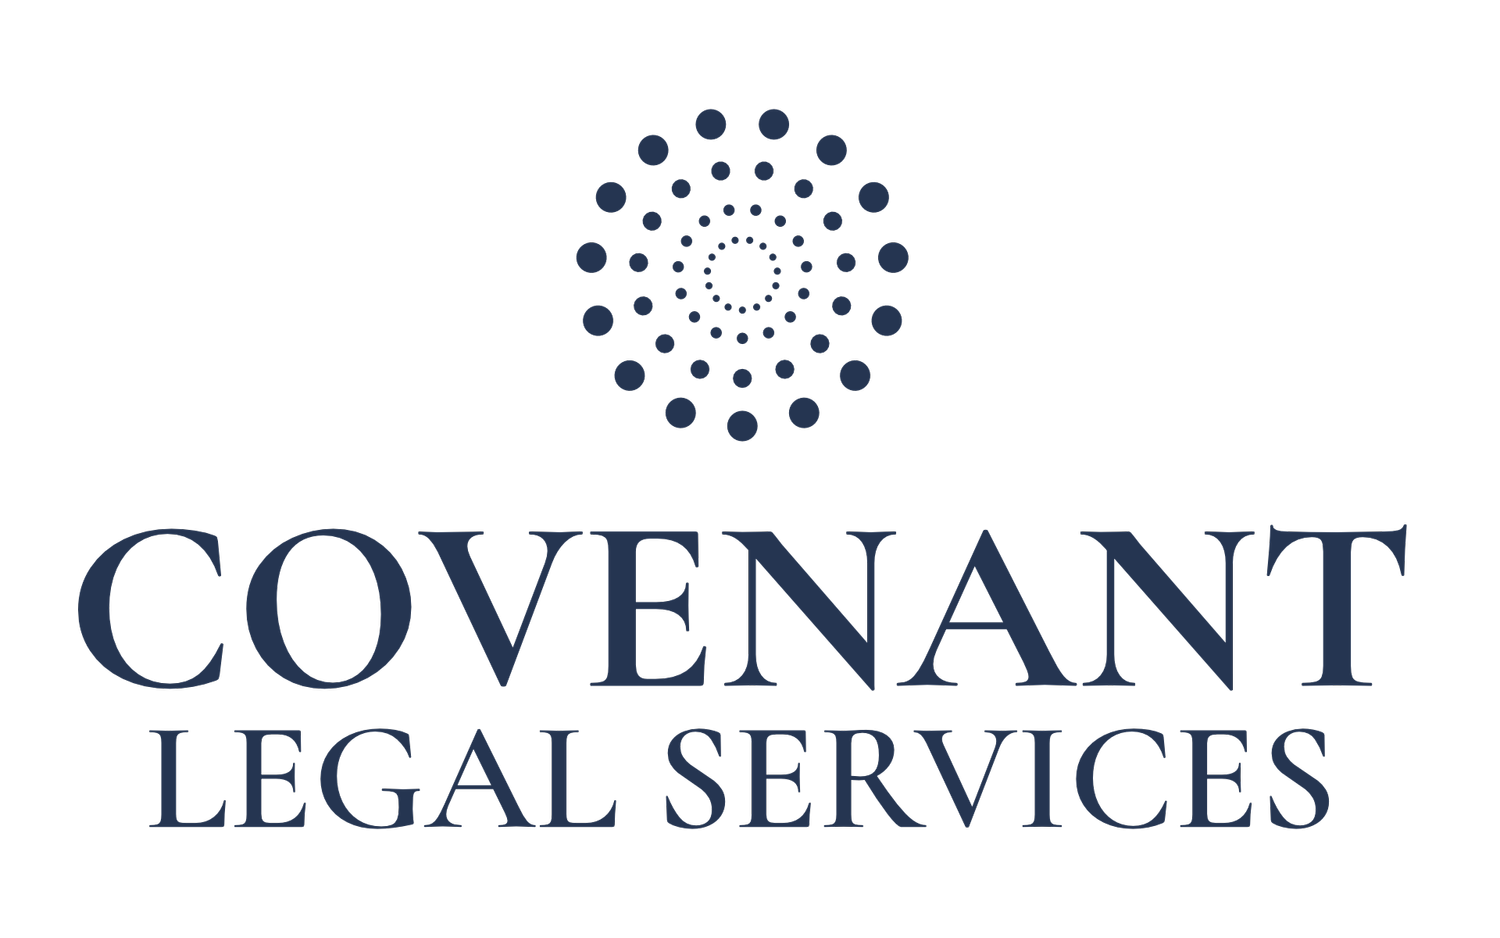 Covenant Legal Services